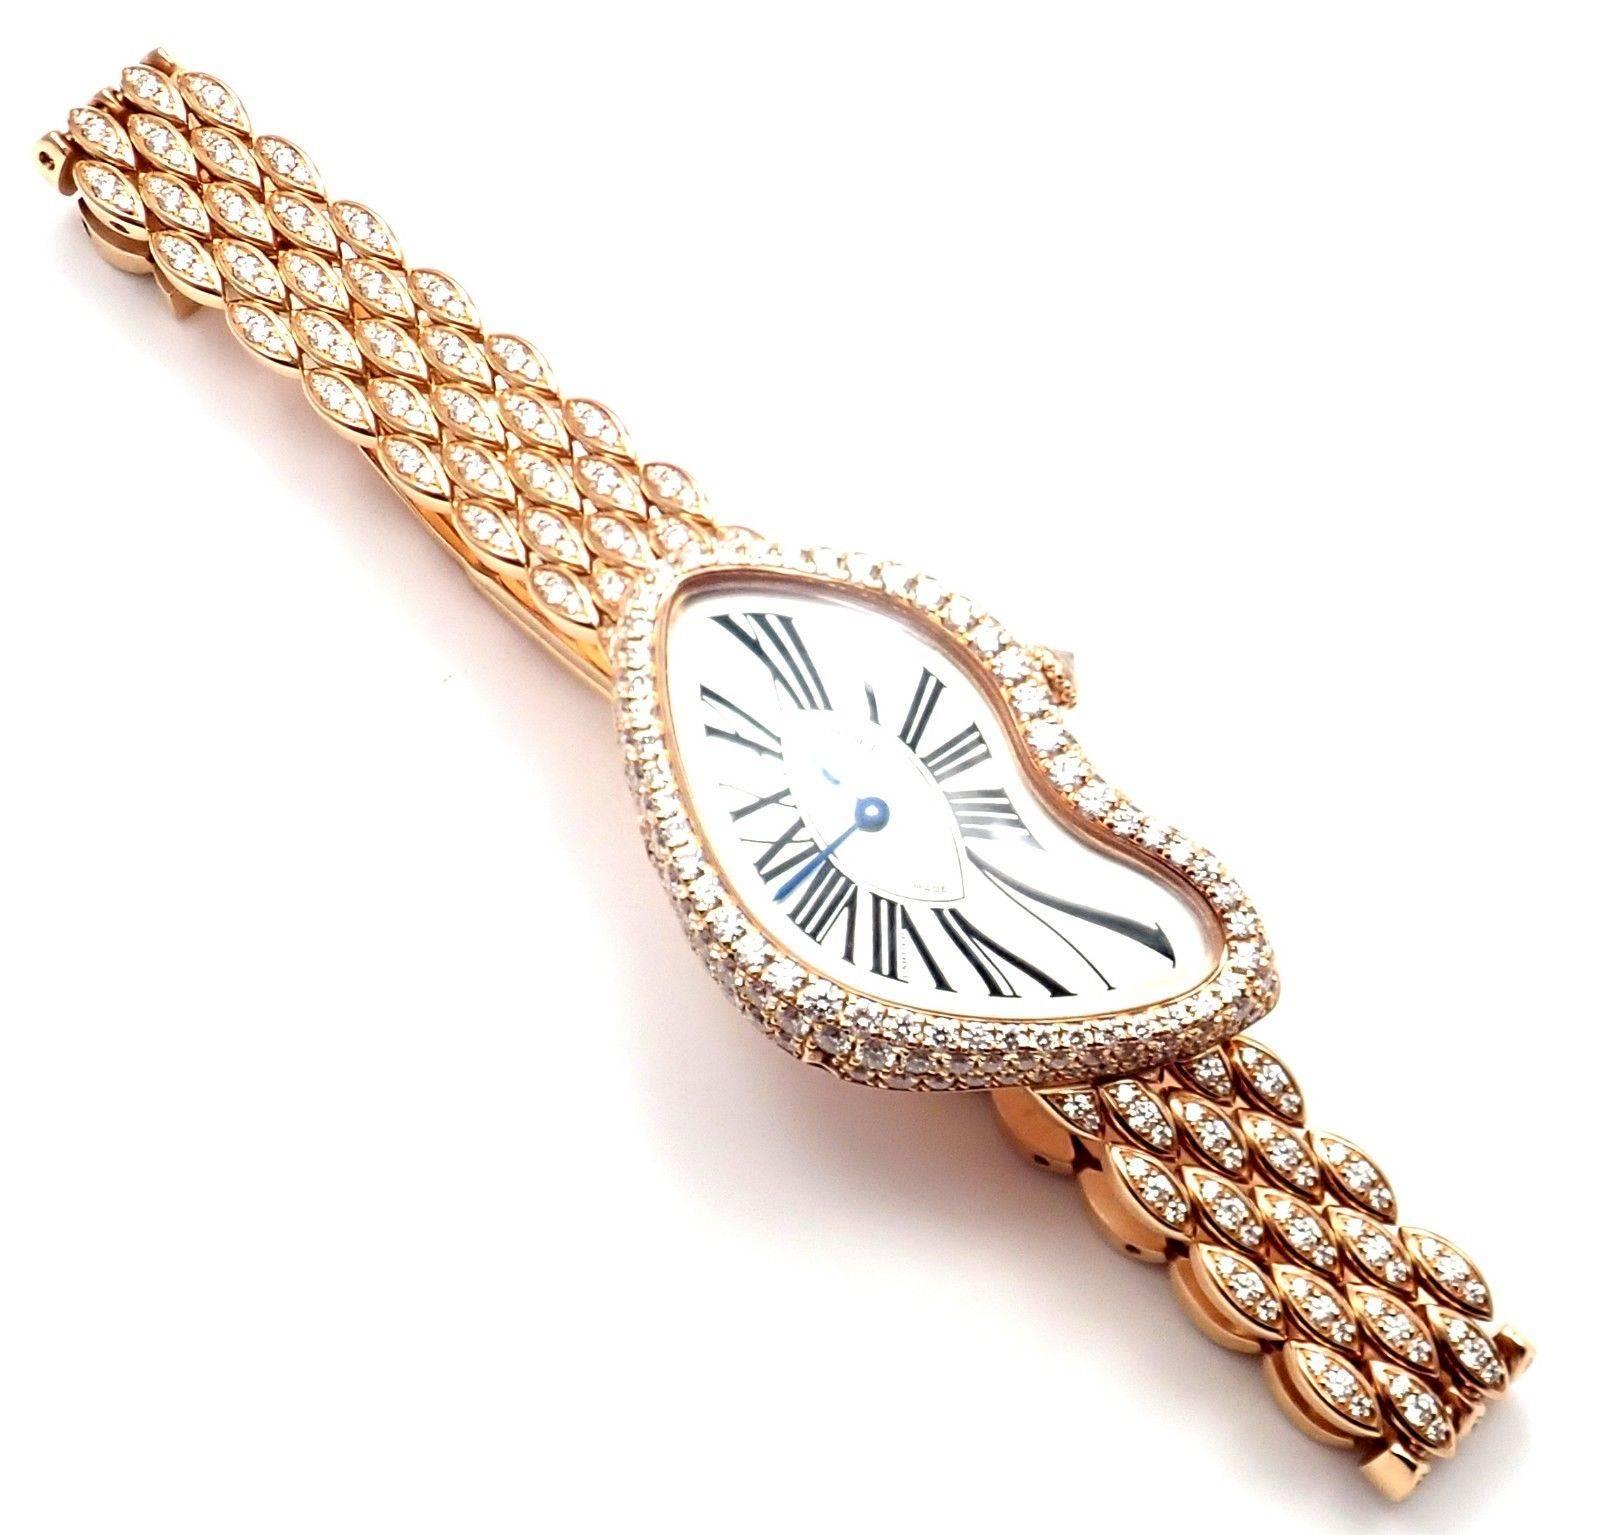 Montre-bracelet Crash Cartier en or rose et diamants édition limitée Ref HP100653 4